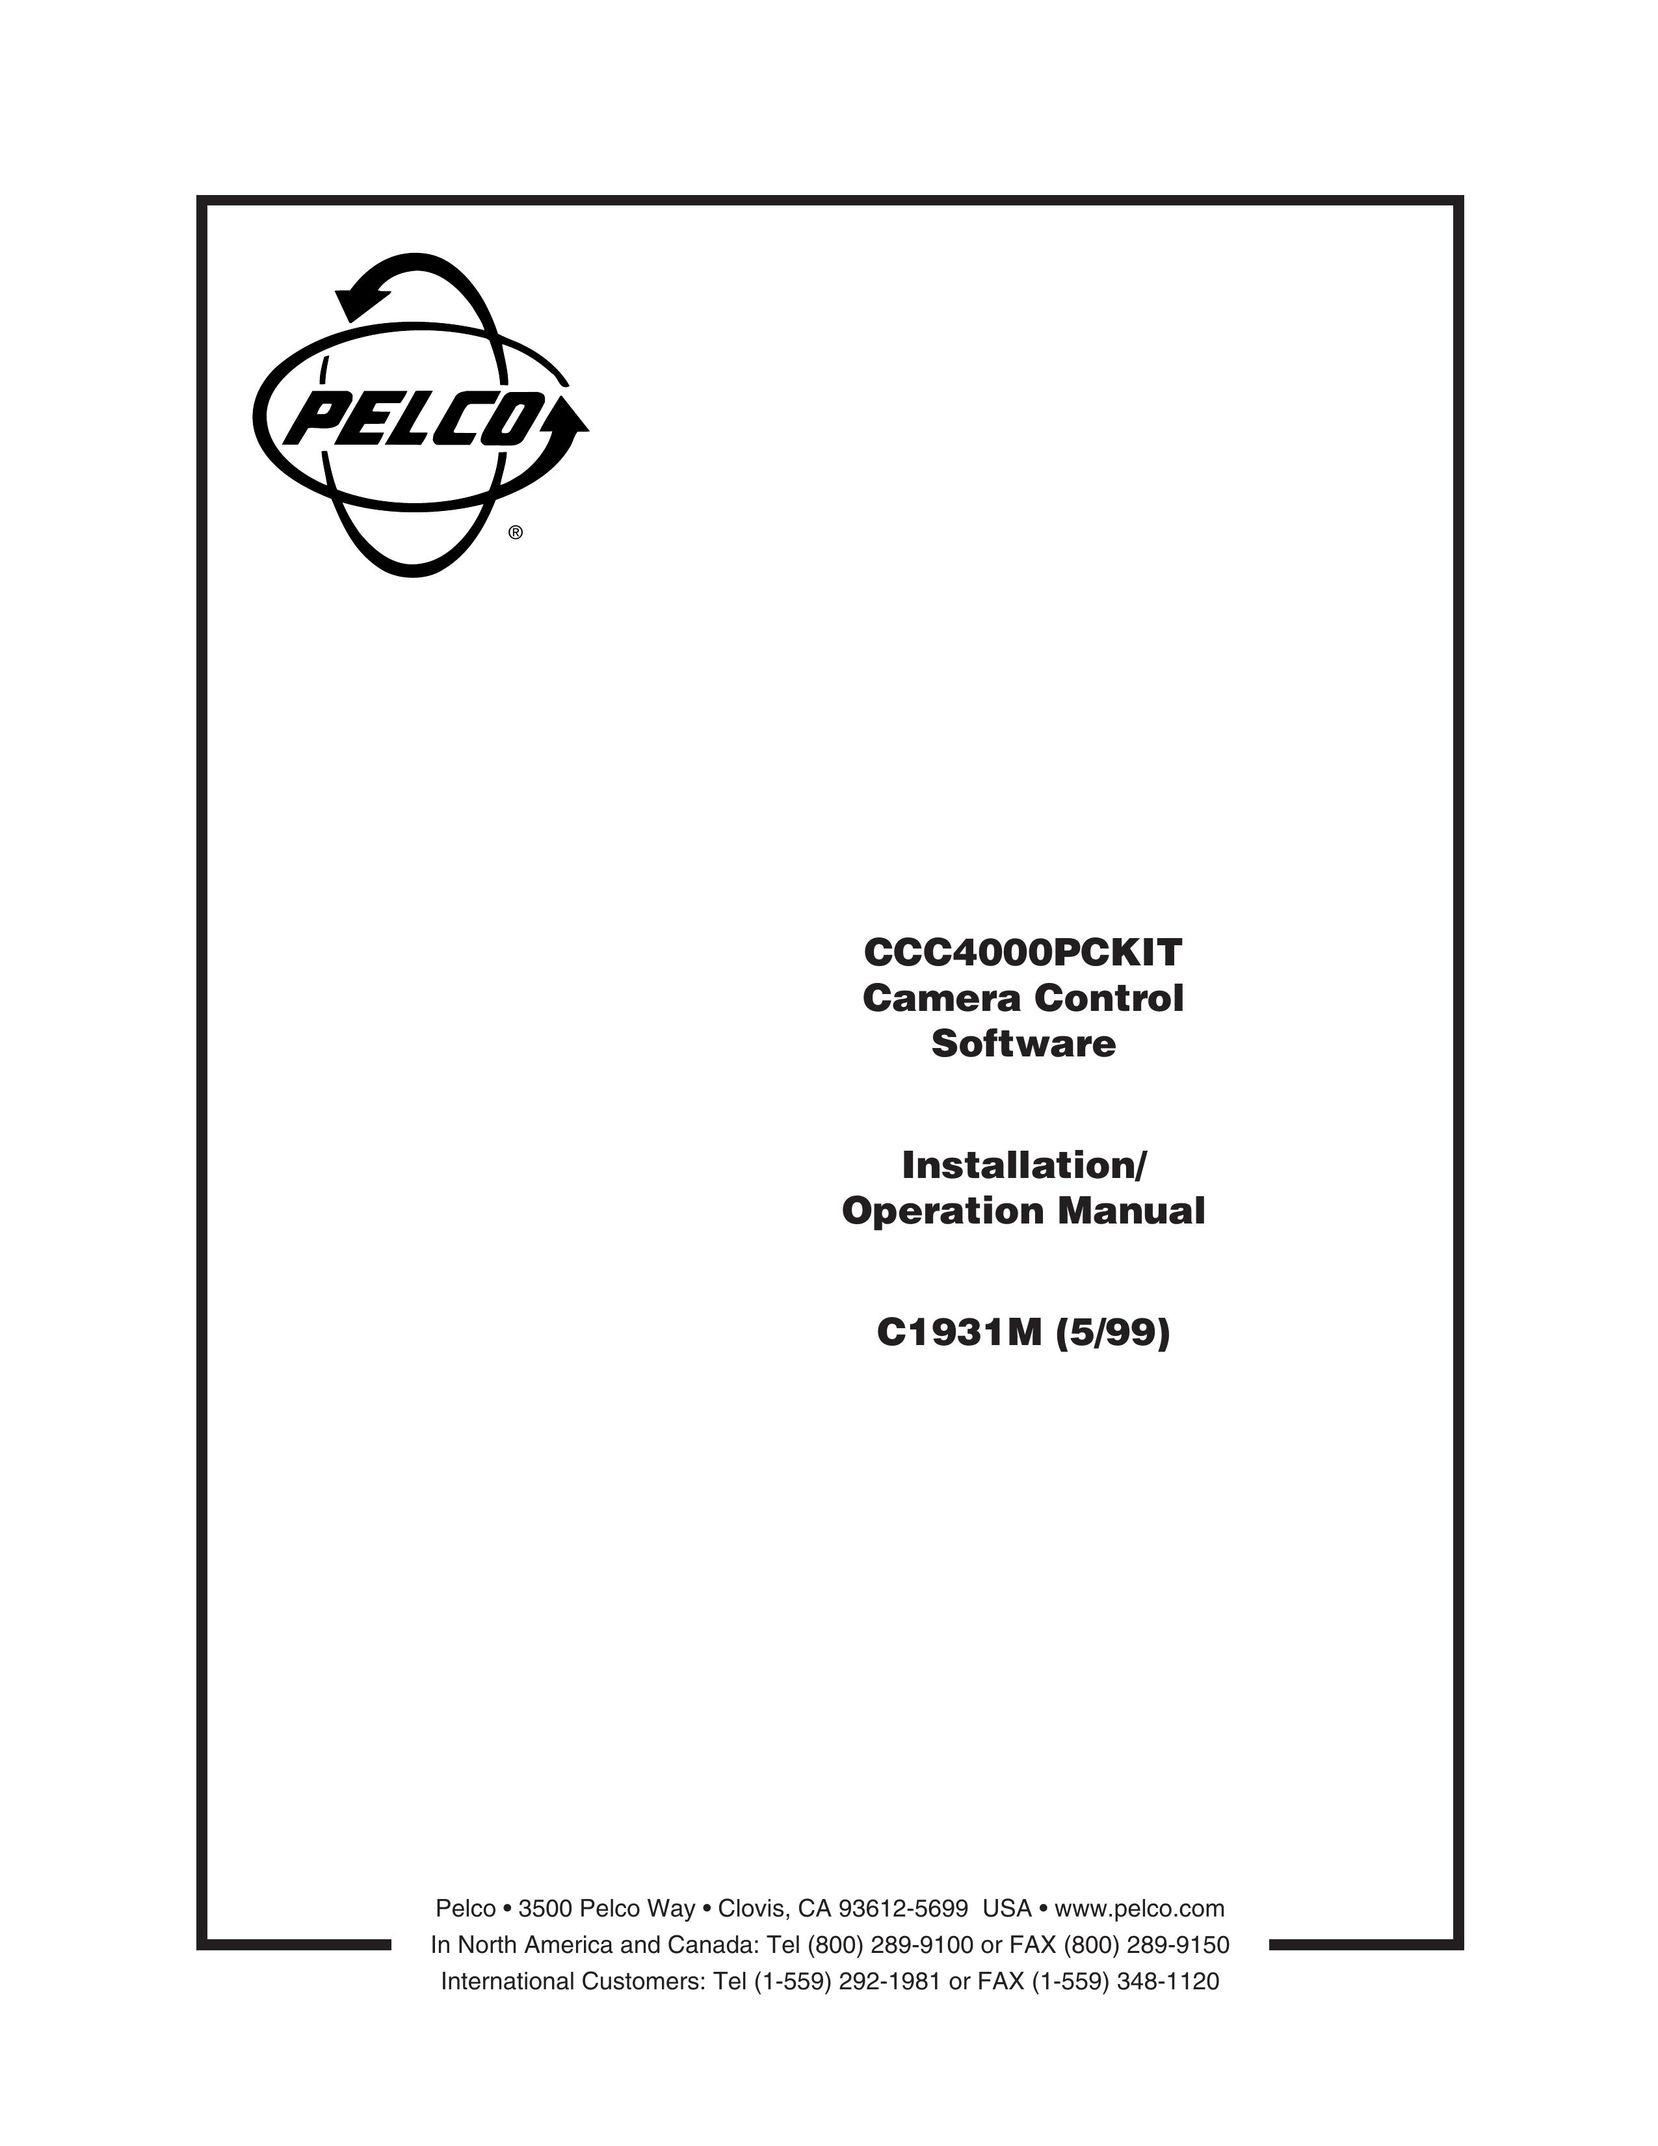 Pelco ccc4000pckit Model Vehicle User Manual